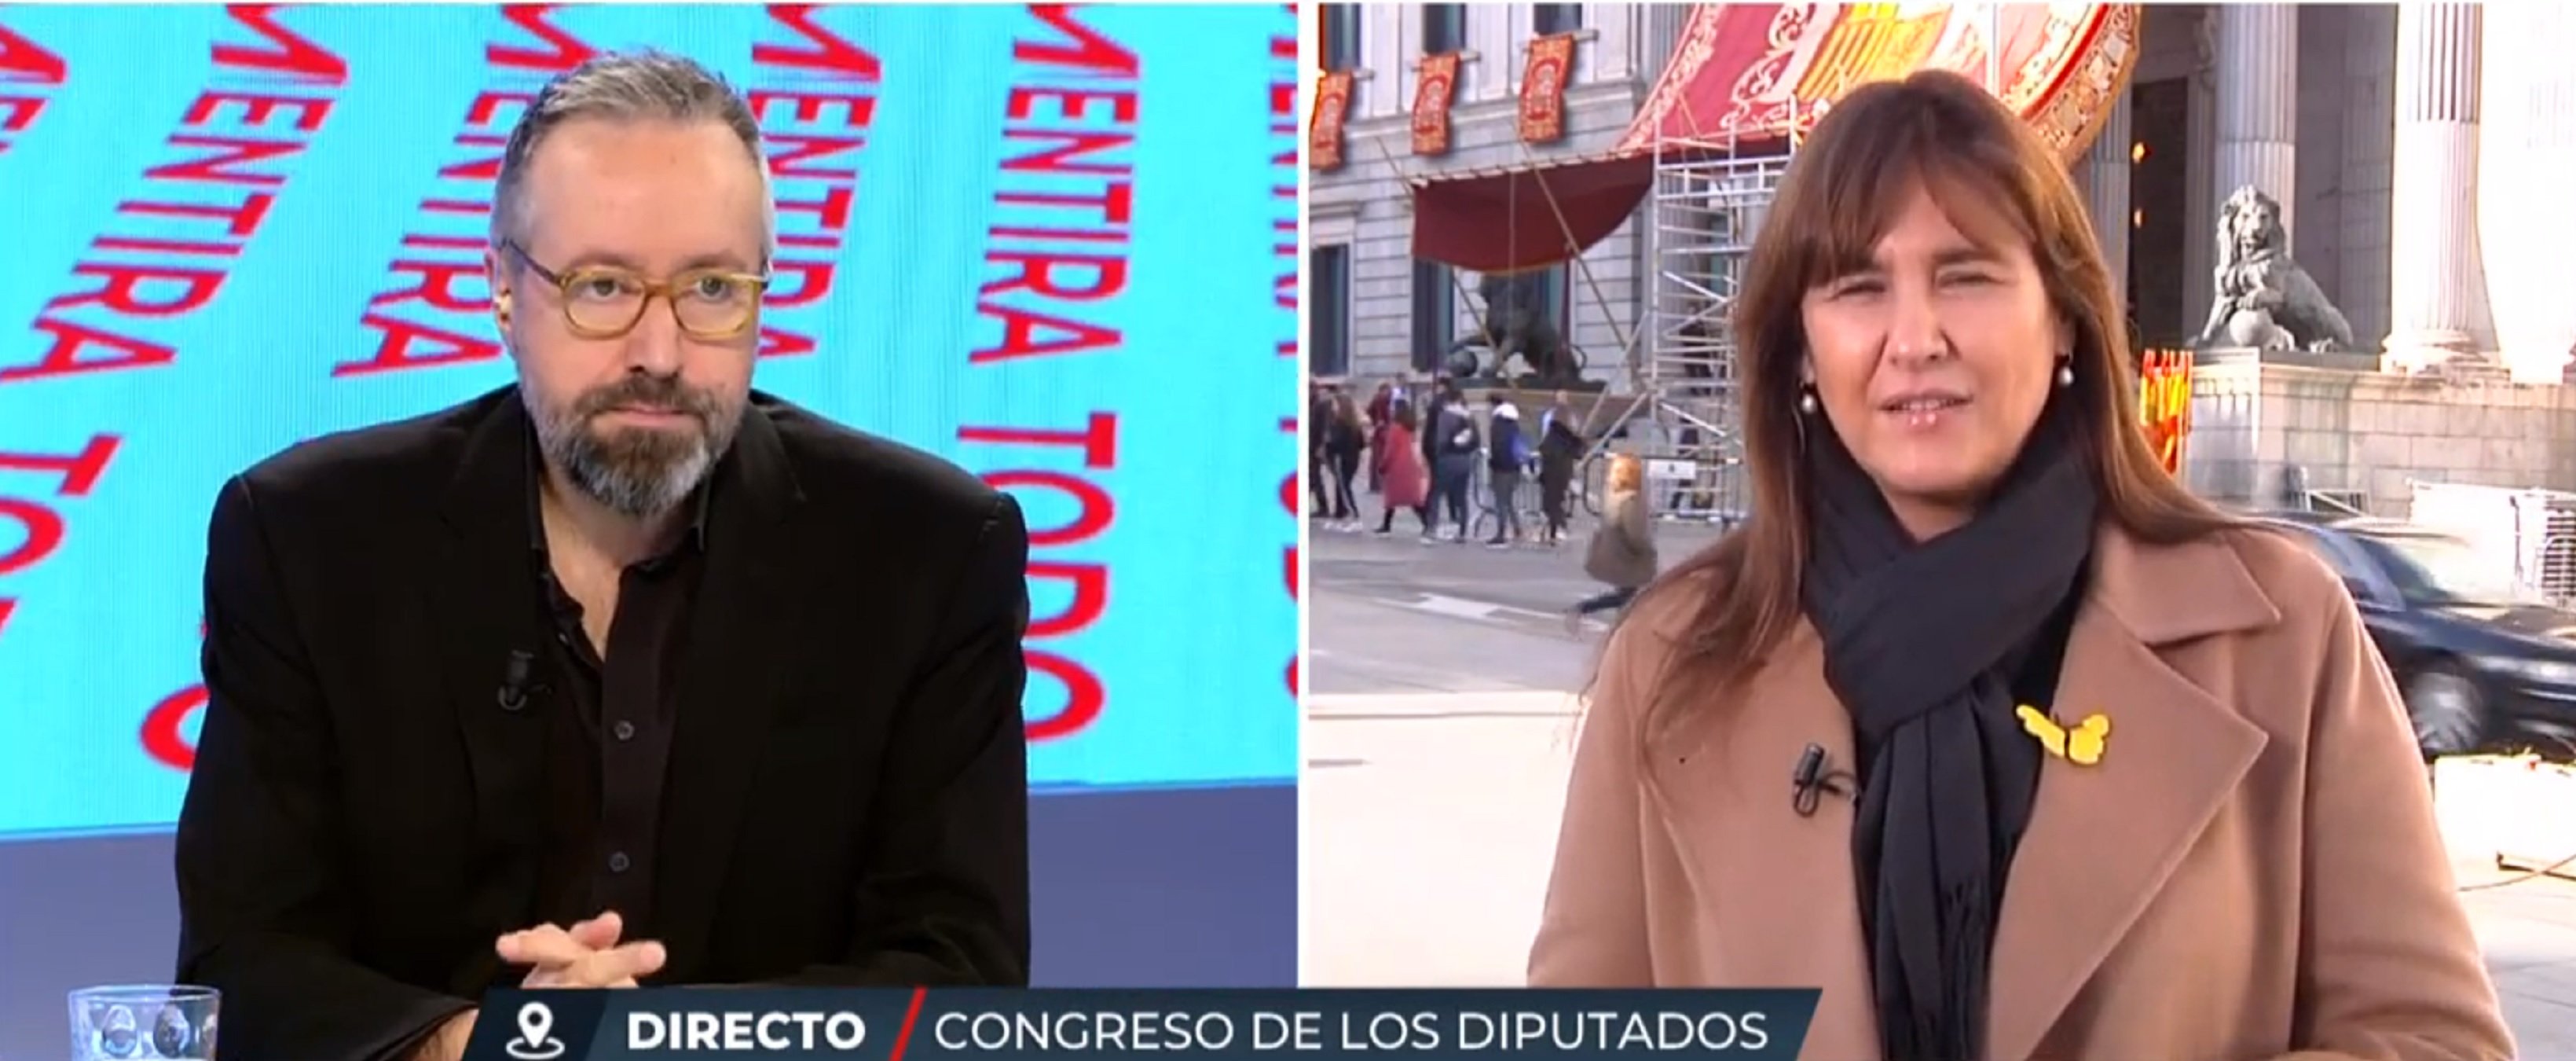 Tensió amb Laura Borràs a la TV i Girauta cridant "Yo ya no quiero ser catalán"